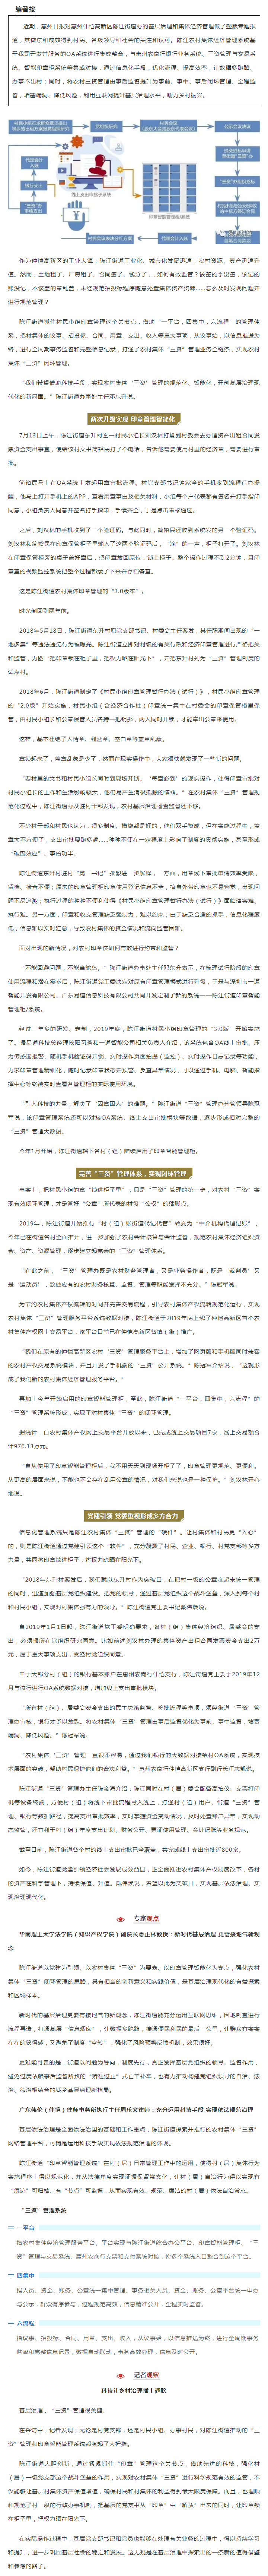 一枚印章背后的乡村治理故事--惠州日报关于陈江集体经济管理平台的深度报道